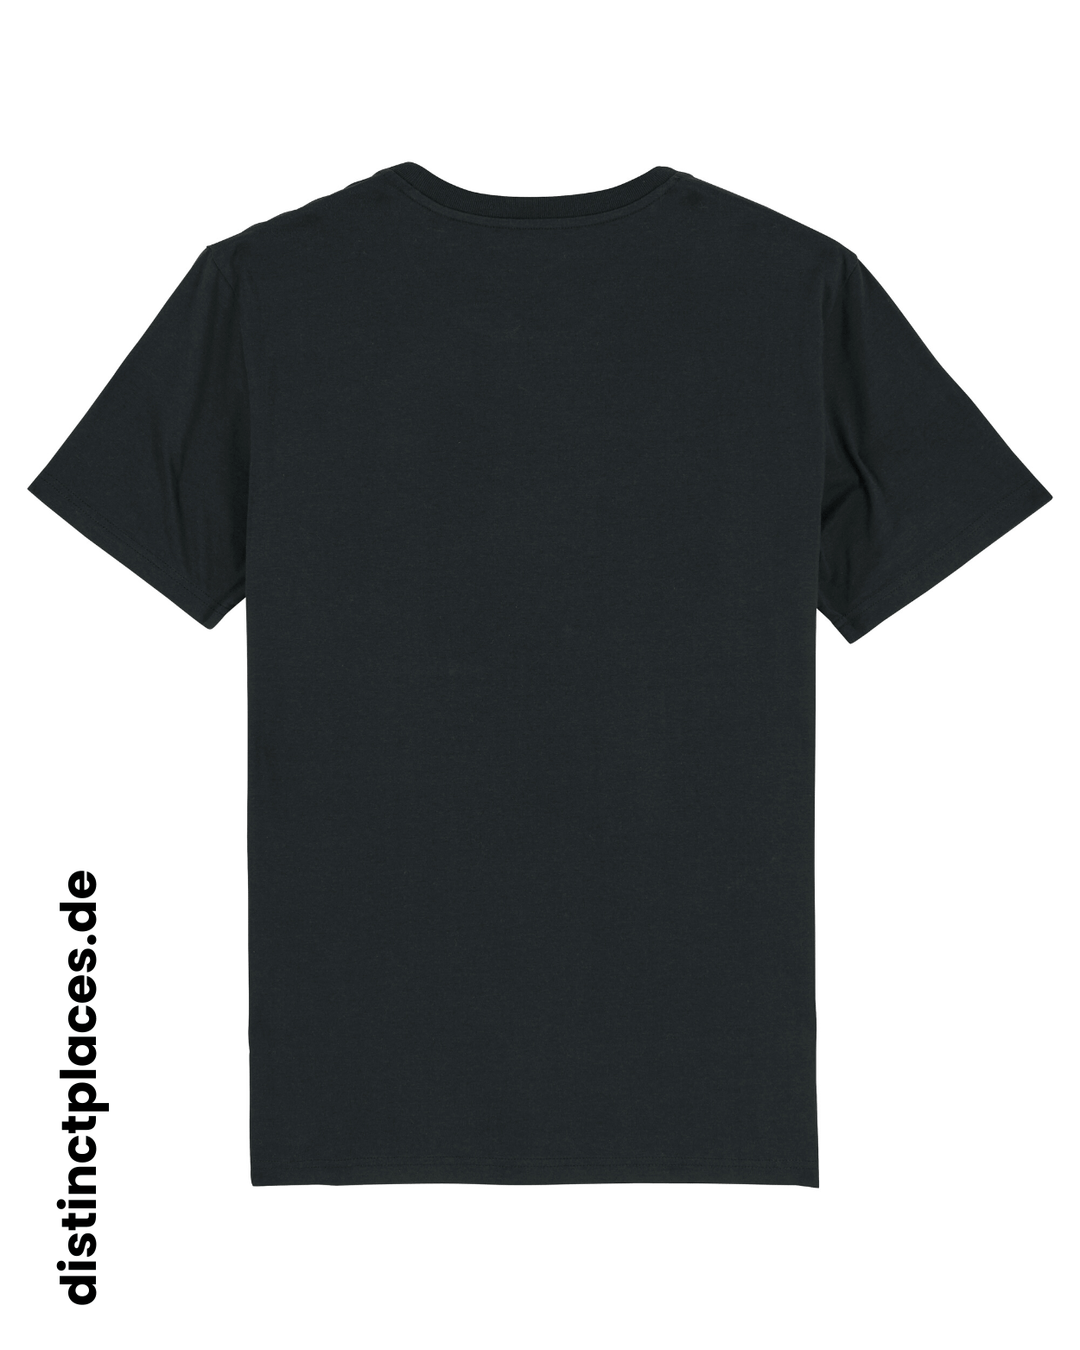 Schwarzes fairtrade, vegan und bio-baumwoll T-Shirt von hinten mit einem minimalistischem weißen Logo, beziehungsweise Wappen für Freiburg